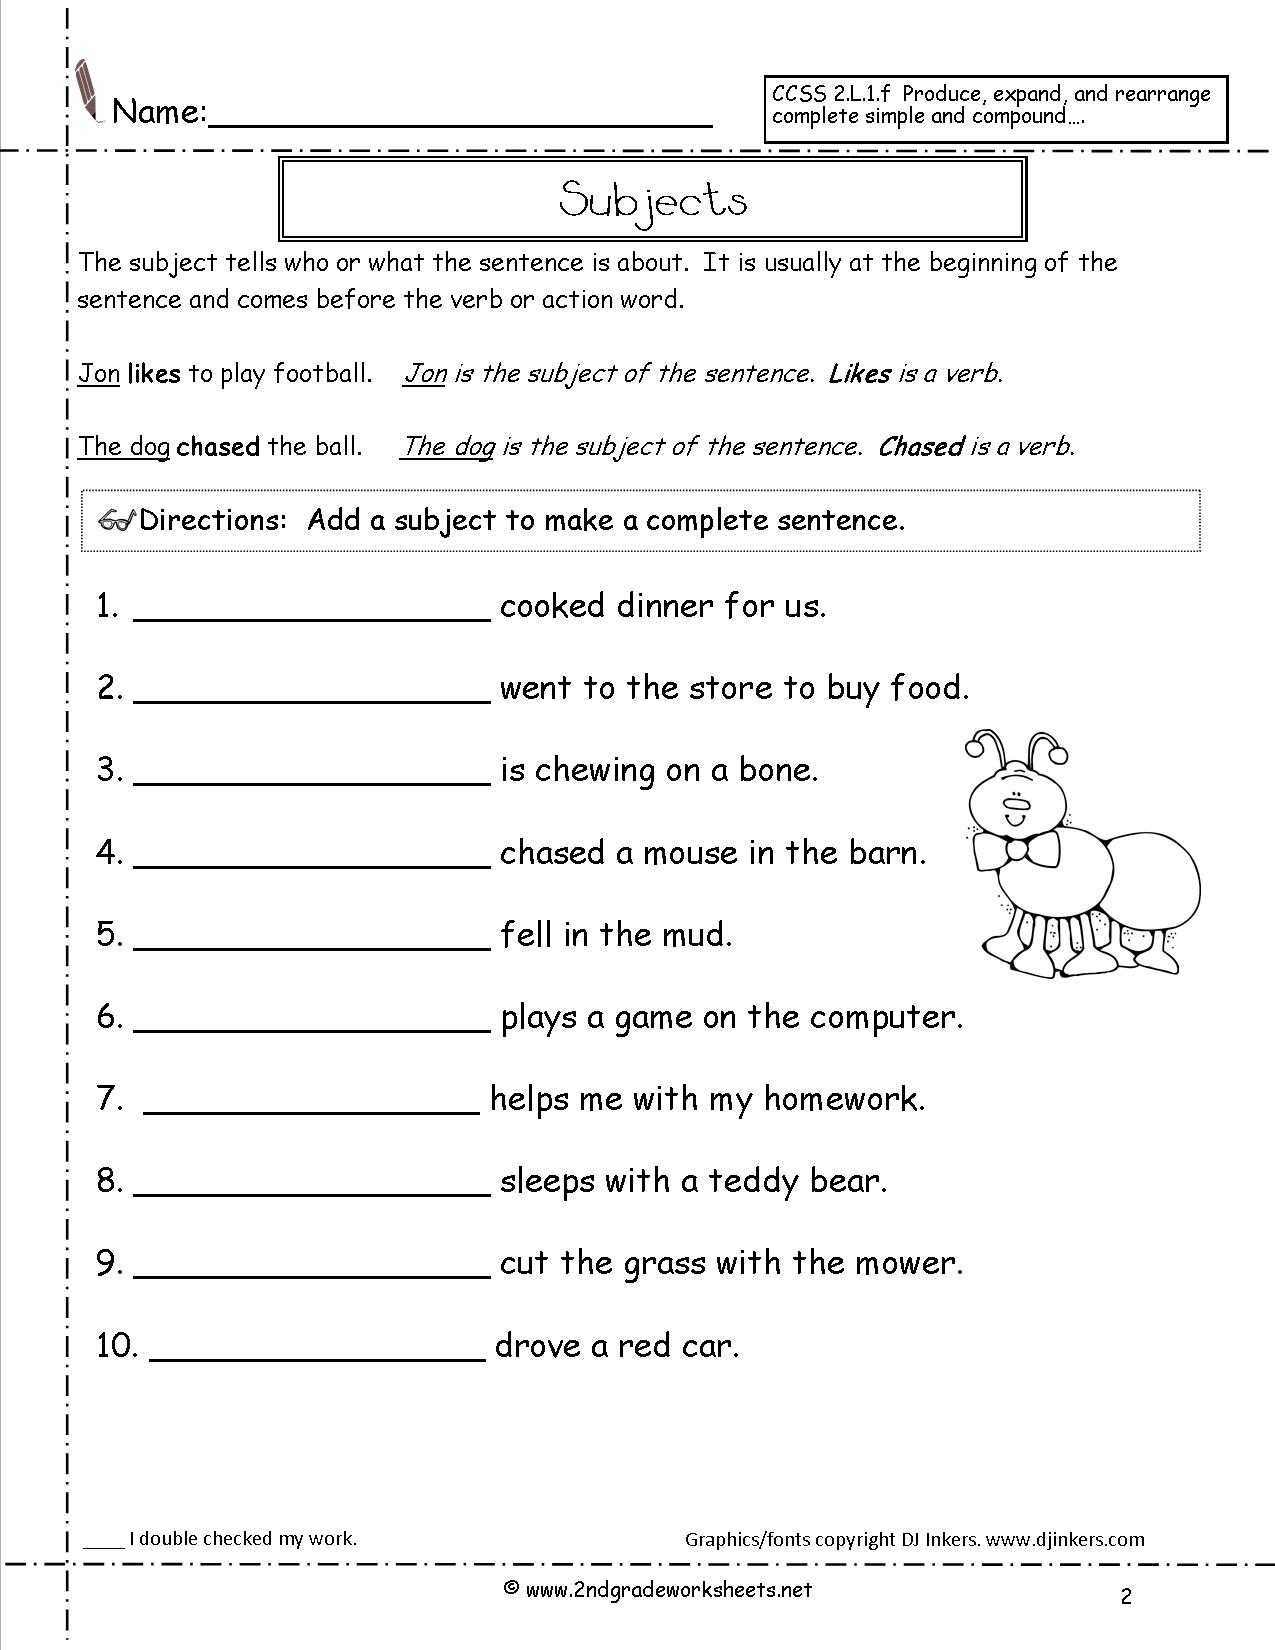 Unscramble Sentences Worksheets 1st Grade together with Plete Sentences Worksheets 1st Grade the Best Worksheets Image